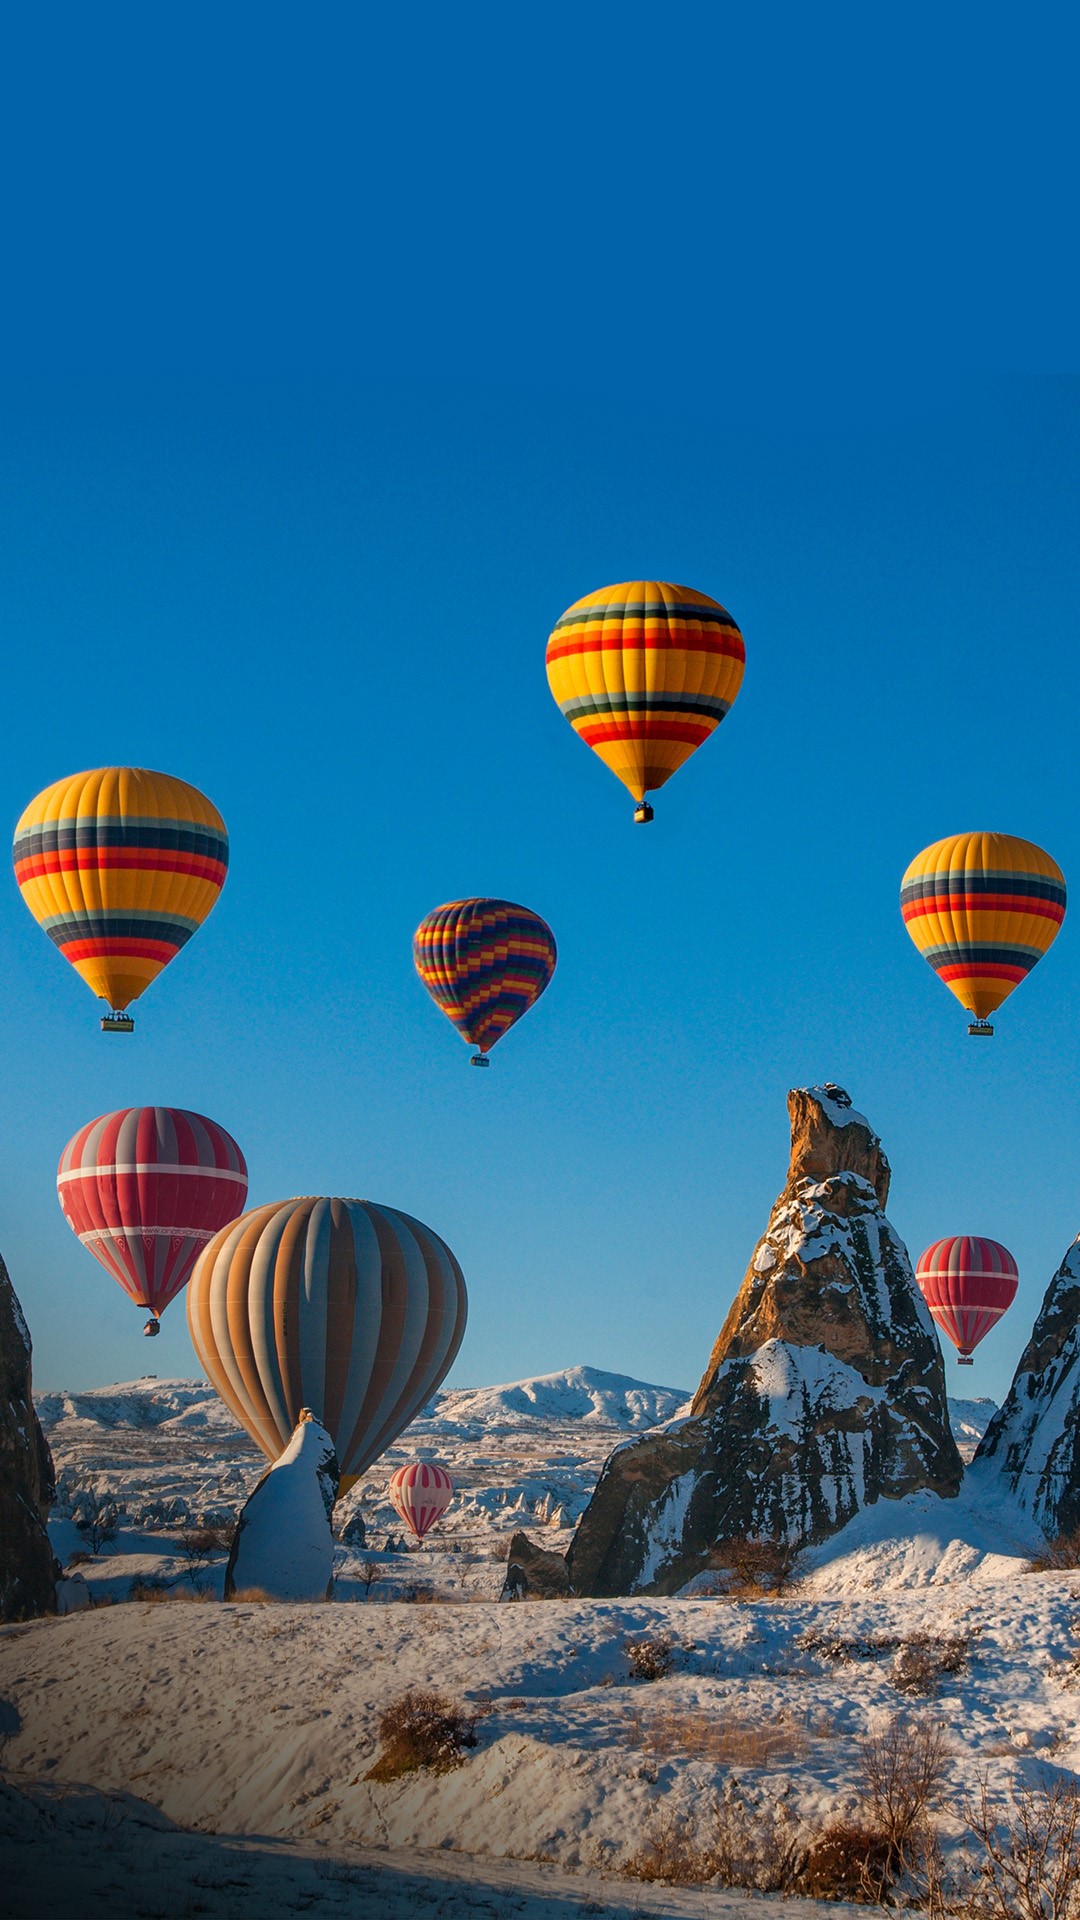 Hot air ballooning in Cappadocia, Central Anatolia of Turkey | Windows 10  Spotlight Images